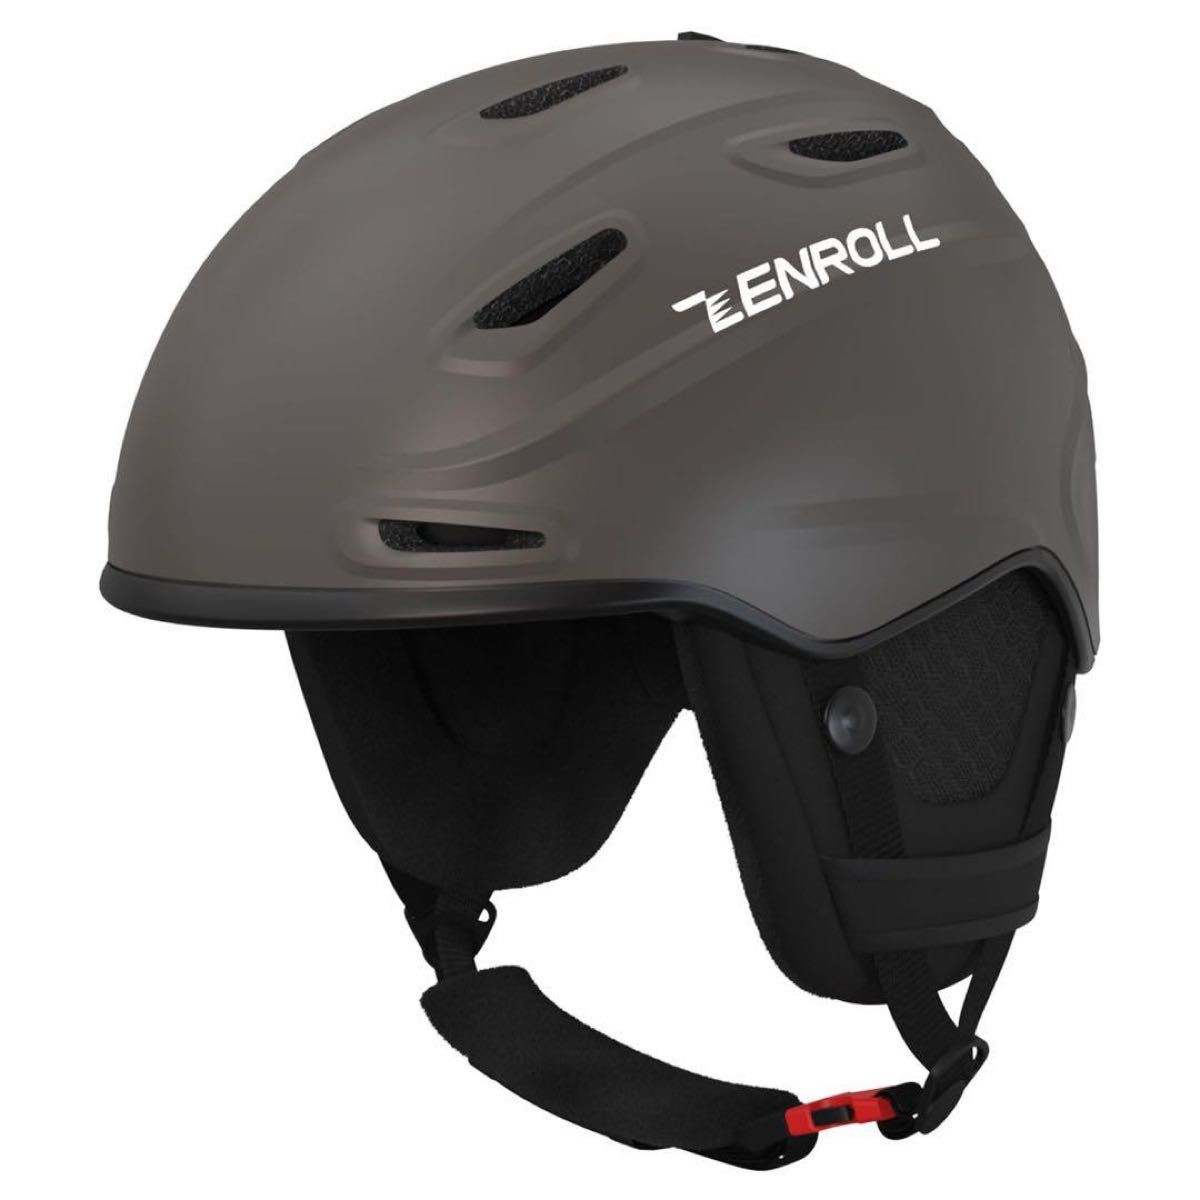 ZENROLL スキーヘルメット大人 サイズ調整 イヤーパッド付き スノーボード